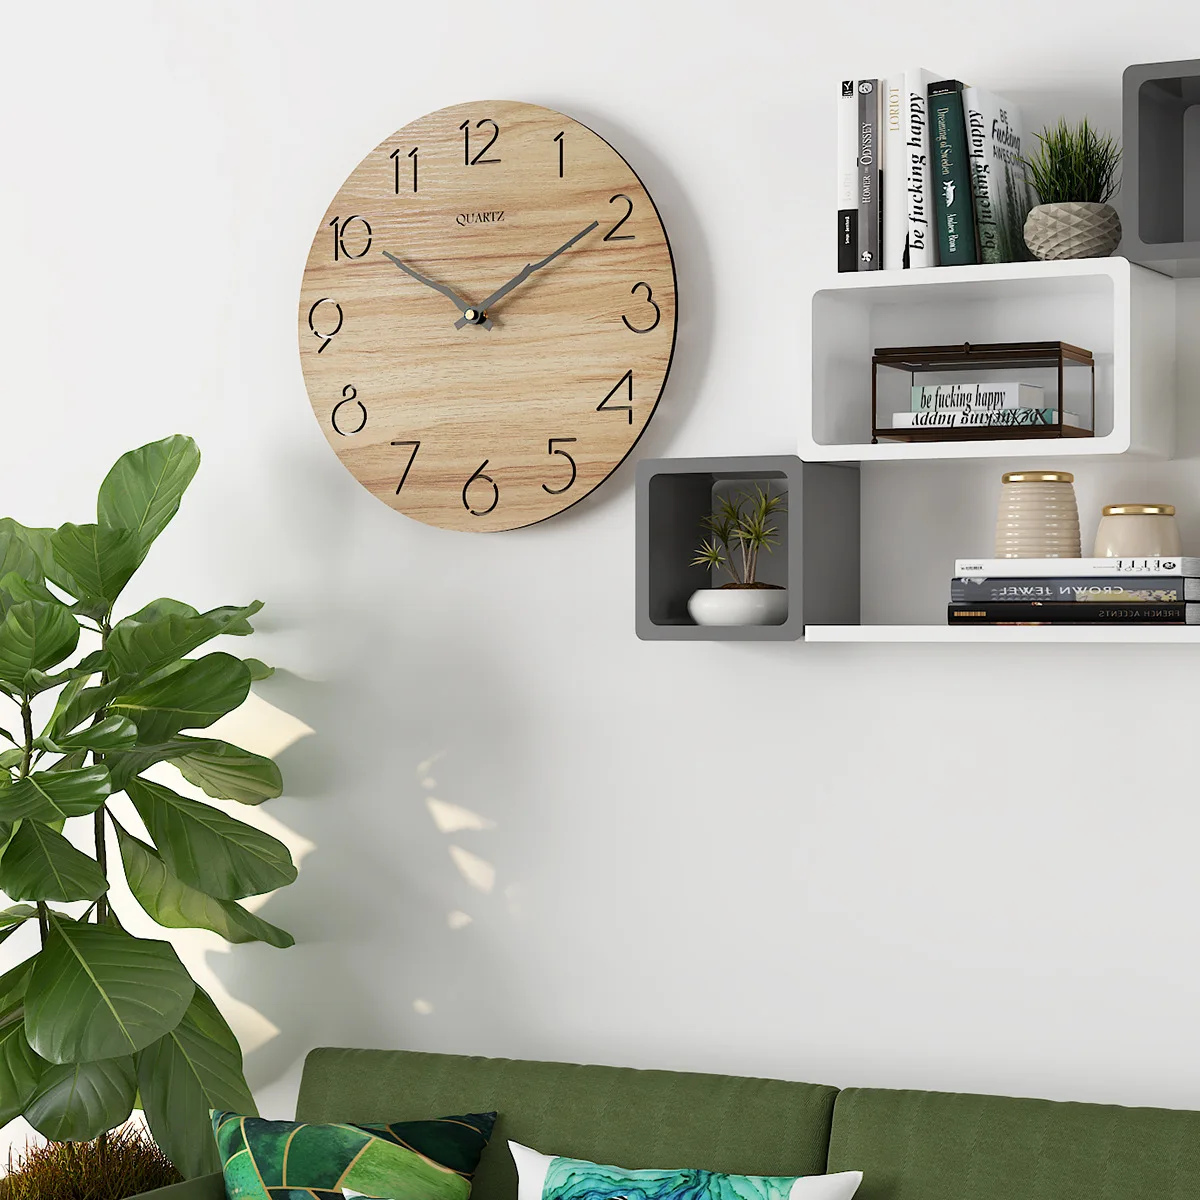 Nórdicos Simple 3D de Madera Reloj de Pared de Diseño Moderno para la Pared de la Sala de Arte de la Decoración de la Cocina de Madera Colgante de Reloj de Pared Reloj de Decoración para el Hogar 2